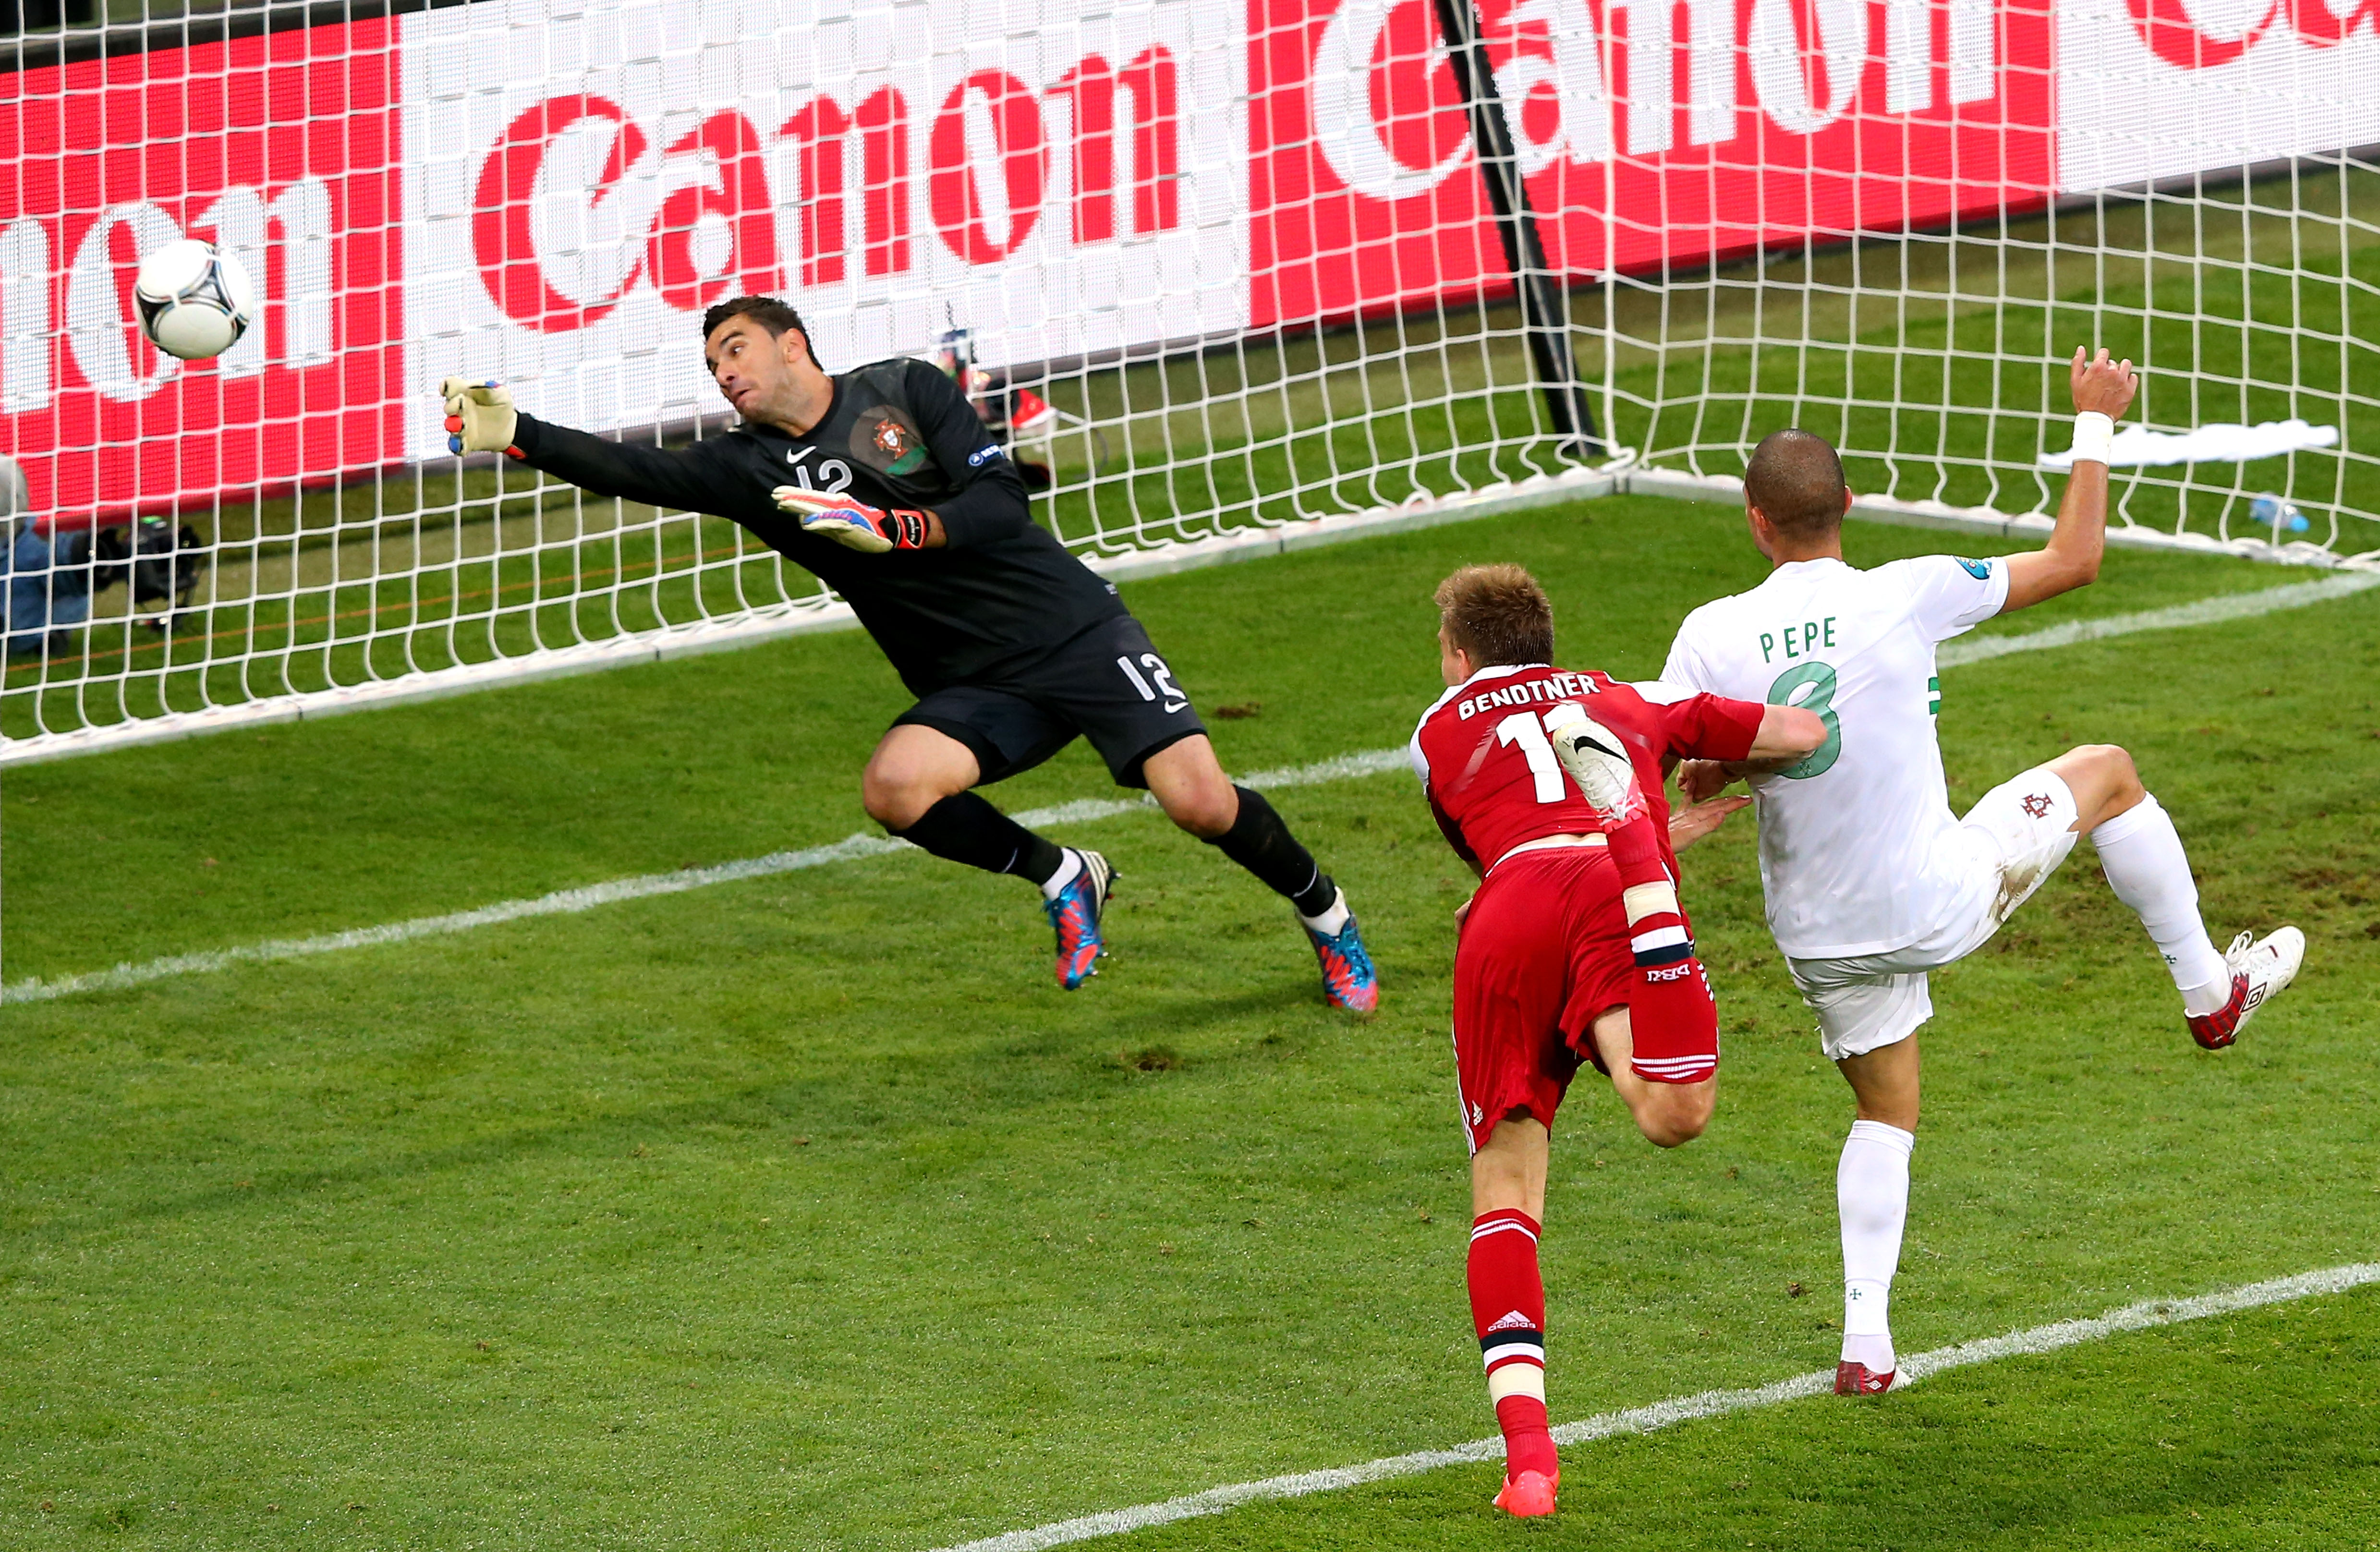 Bendtners nickmål var nära att rädda en poäng åt danskarna, men Portugal avgjorde på slutet.